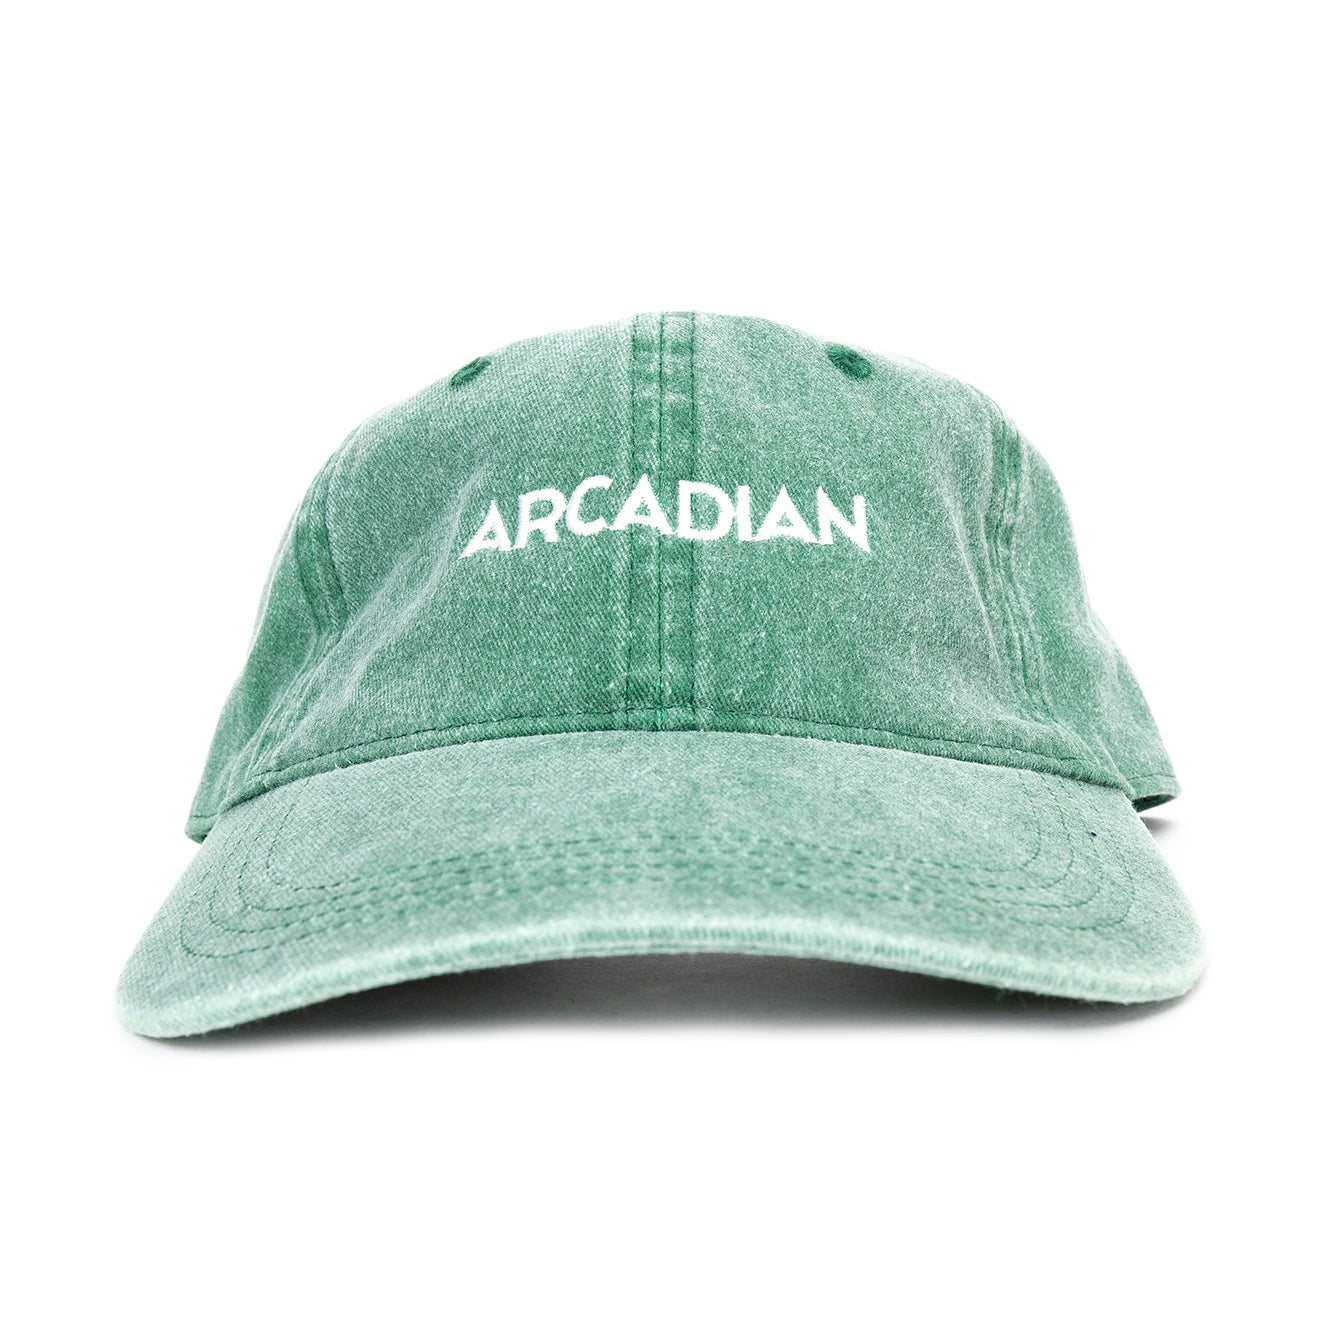 Arcadian OG Dad Hat - Arcadian Grooming: Pomade, Beard Care, Men's Grooming Supplies